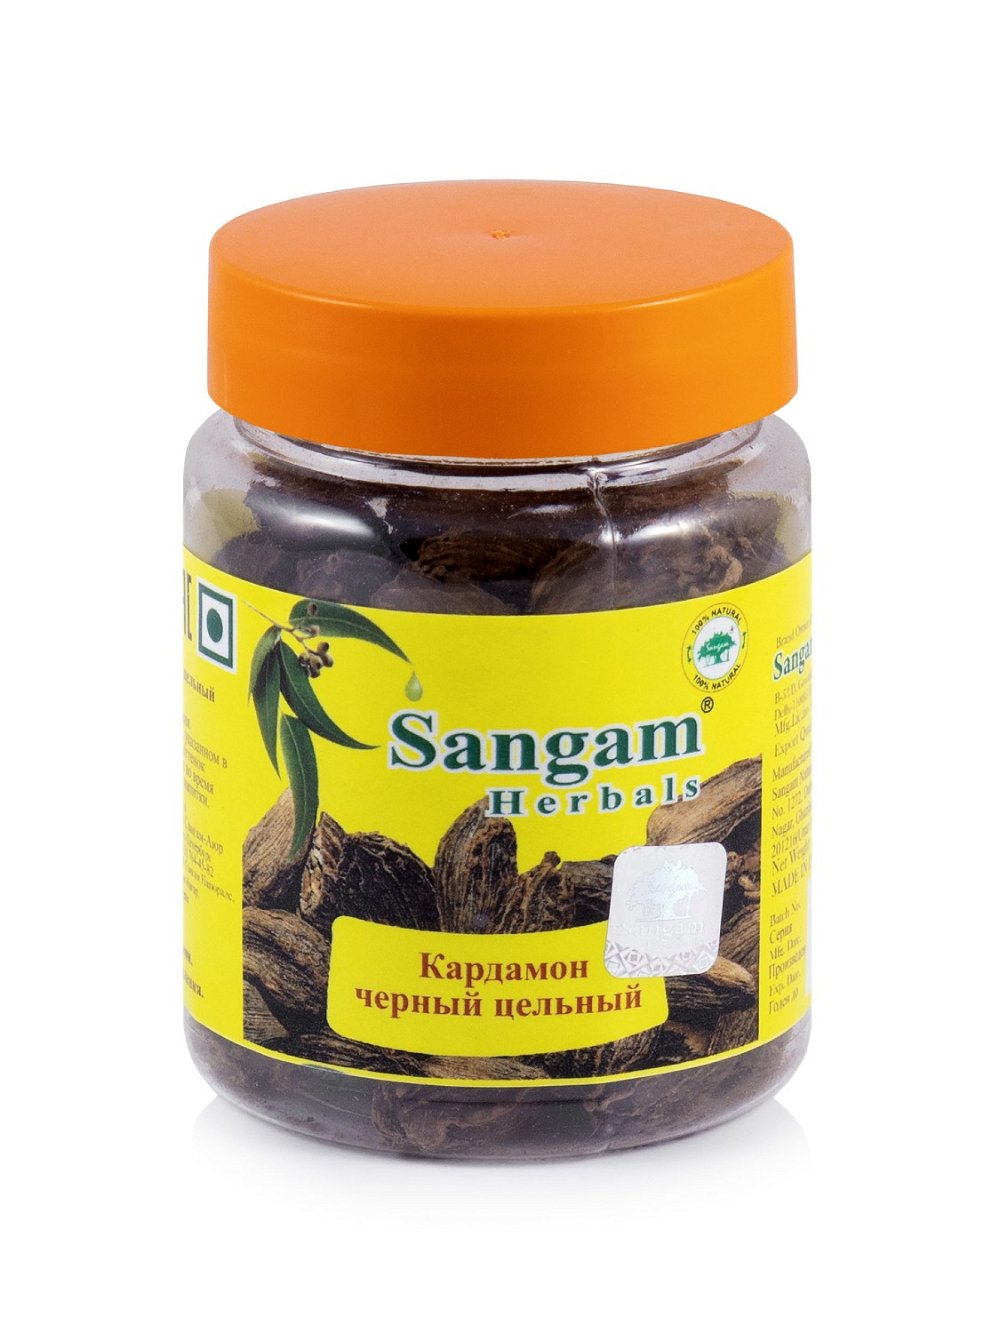 Кардамон черный цельный Sangam Herbals (50 г), Кардамон черный цельный